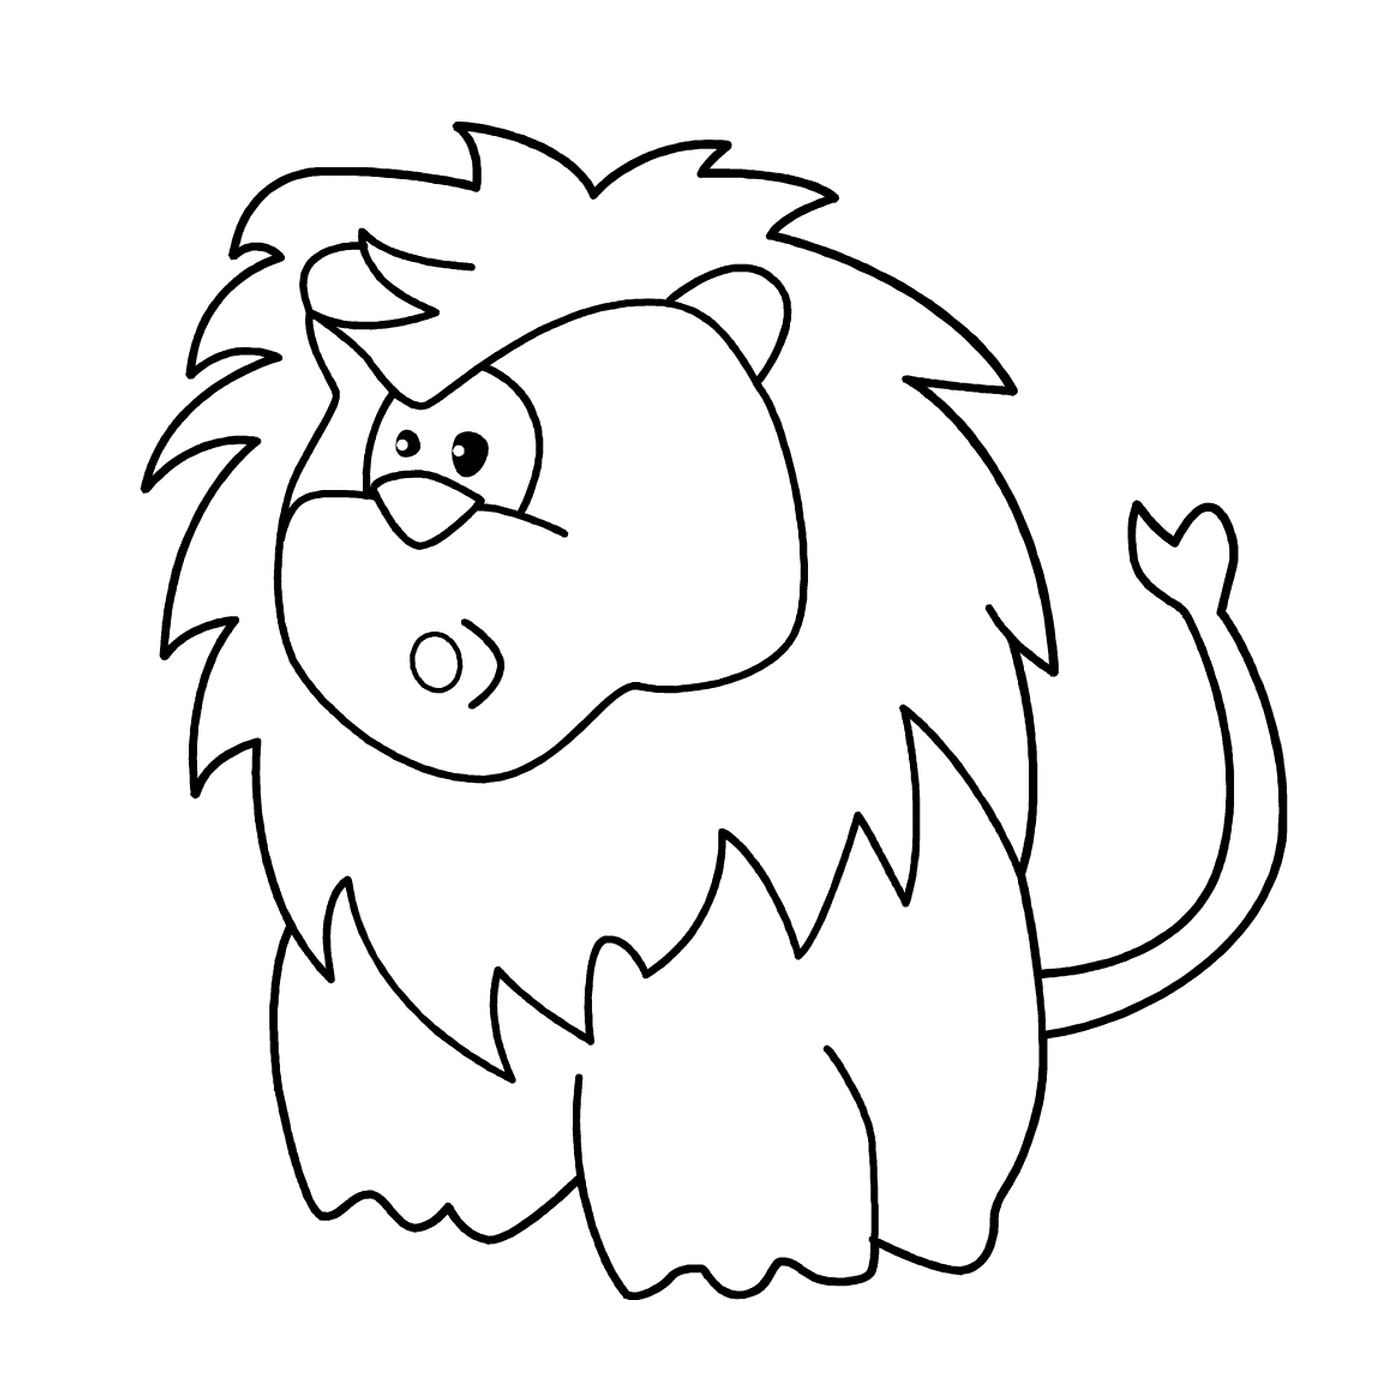  Sorpreso cartone animato di leone 